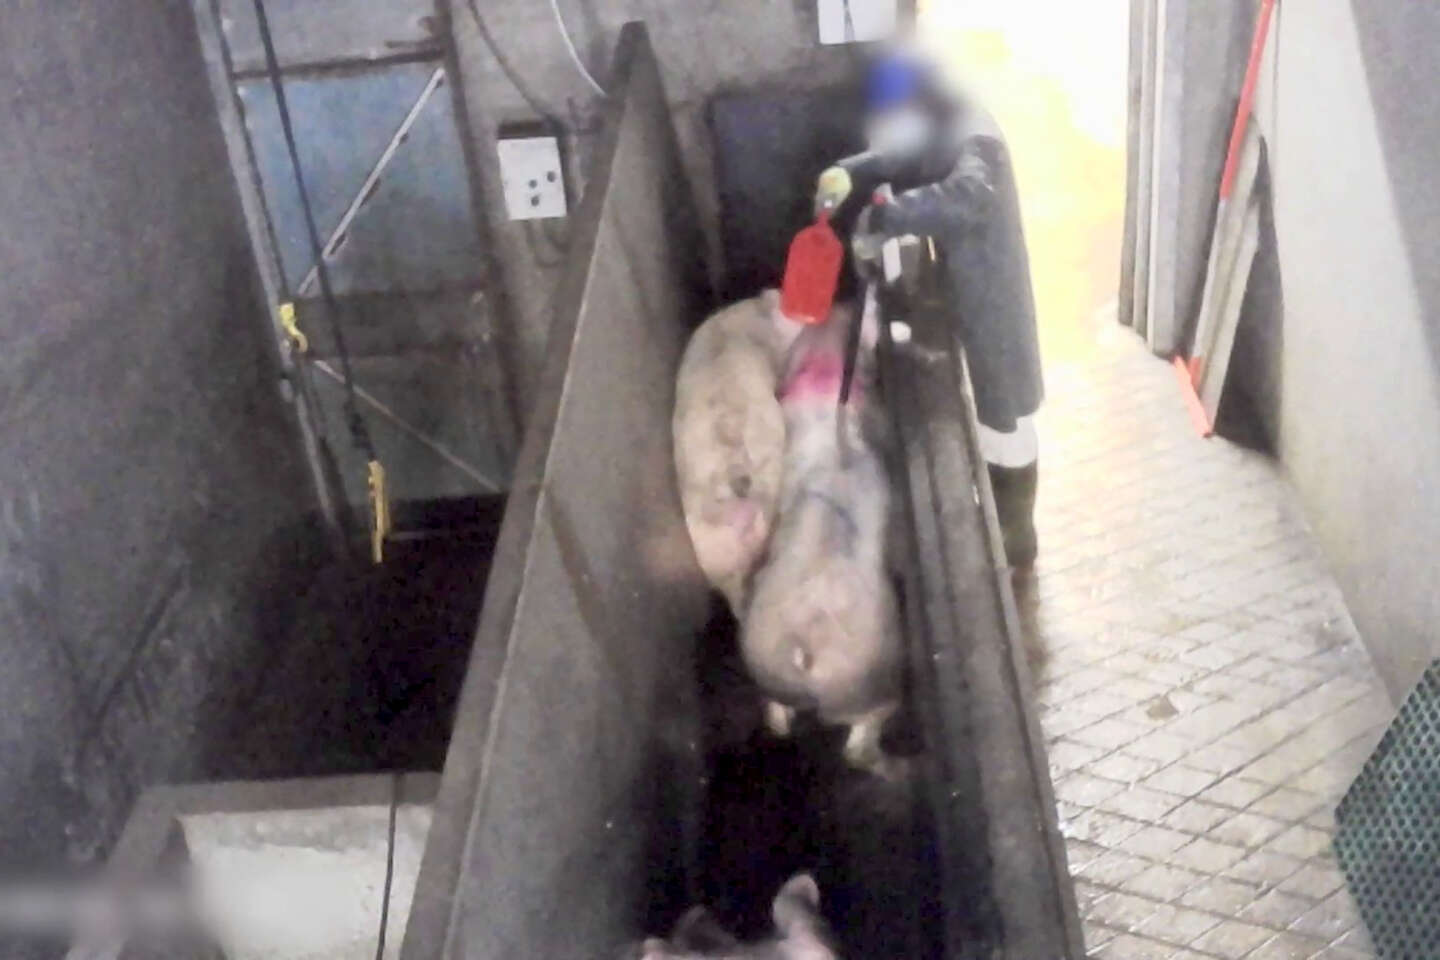 L’un des plus gros élevages de porcs breton lourdement condamné pour maltraitance animale